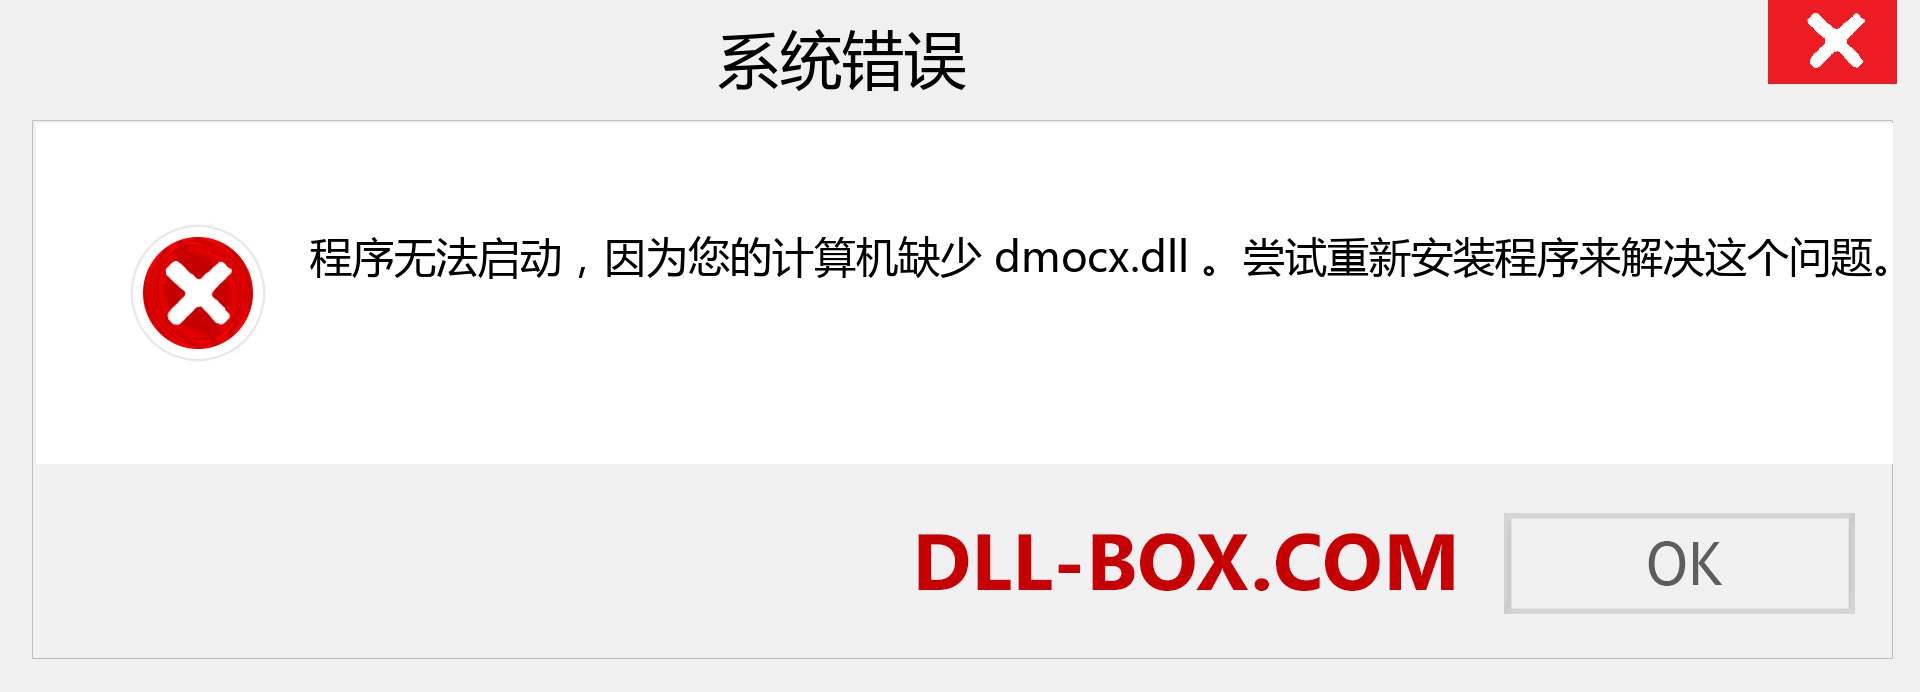 dmocx.dll 文件丢失？。 适用于 Windows 7、8、10 的下载 - 修复 Windows、照片、图像上的 dmocx dll 丢失错误